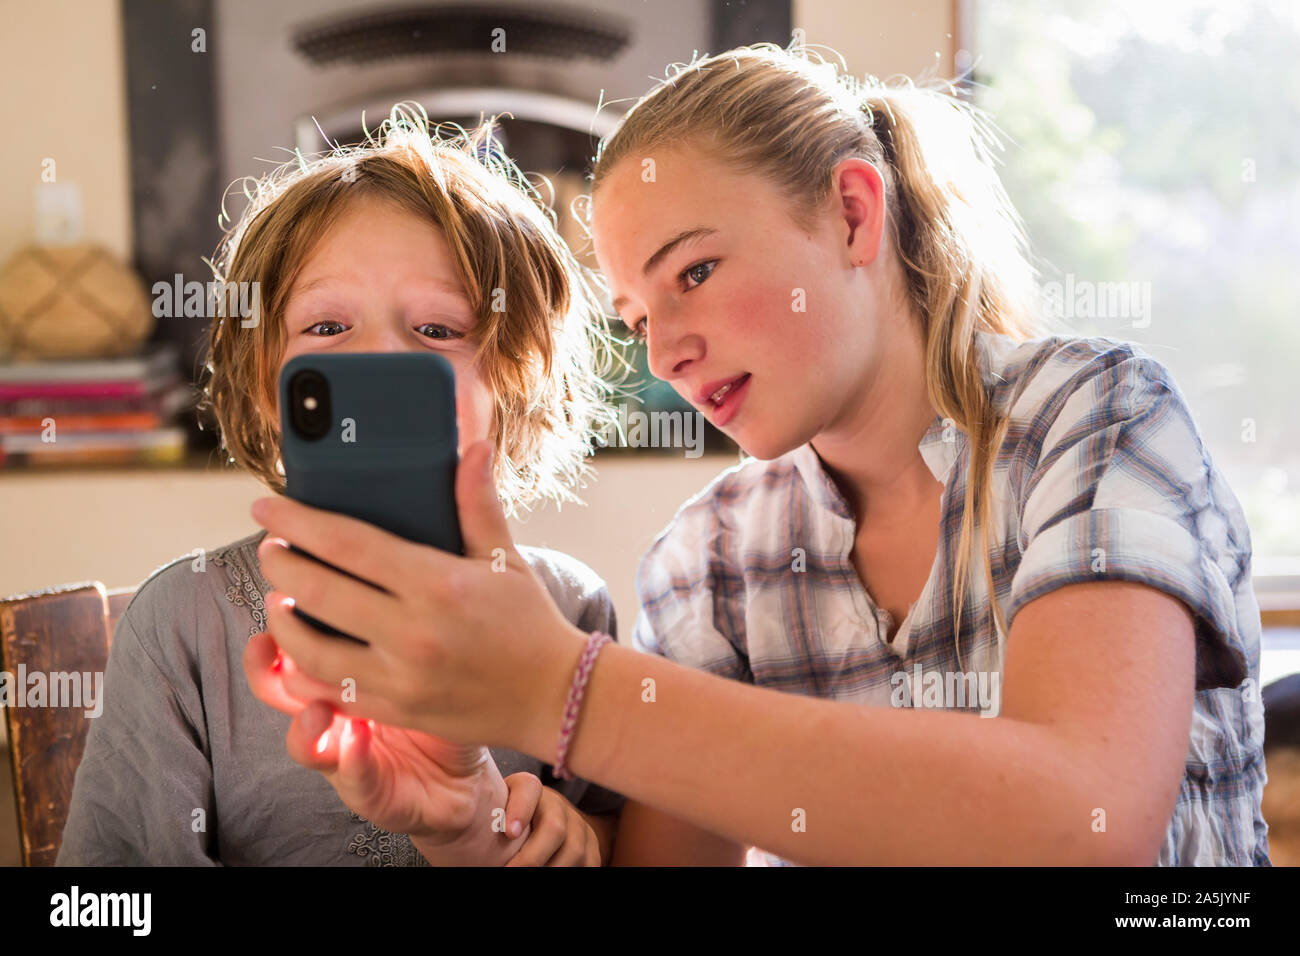 Zwei Kinder, Teenager und ihr 6-jähriger Bruder Holding ein smart phone, selfies nehmen. Stockfoto